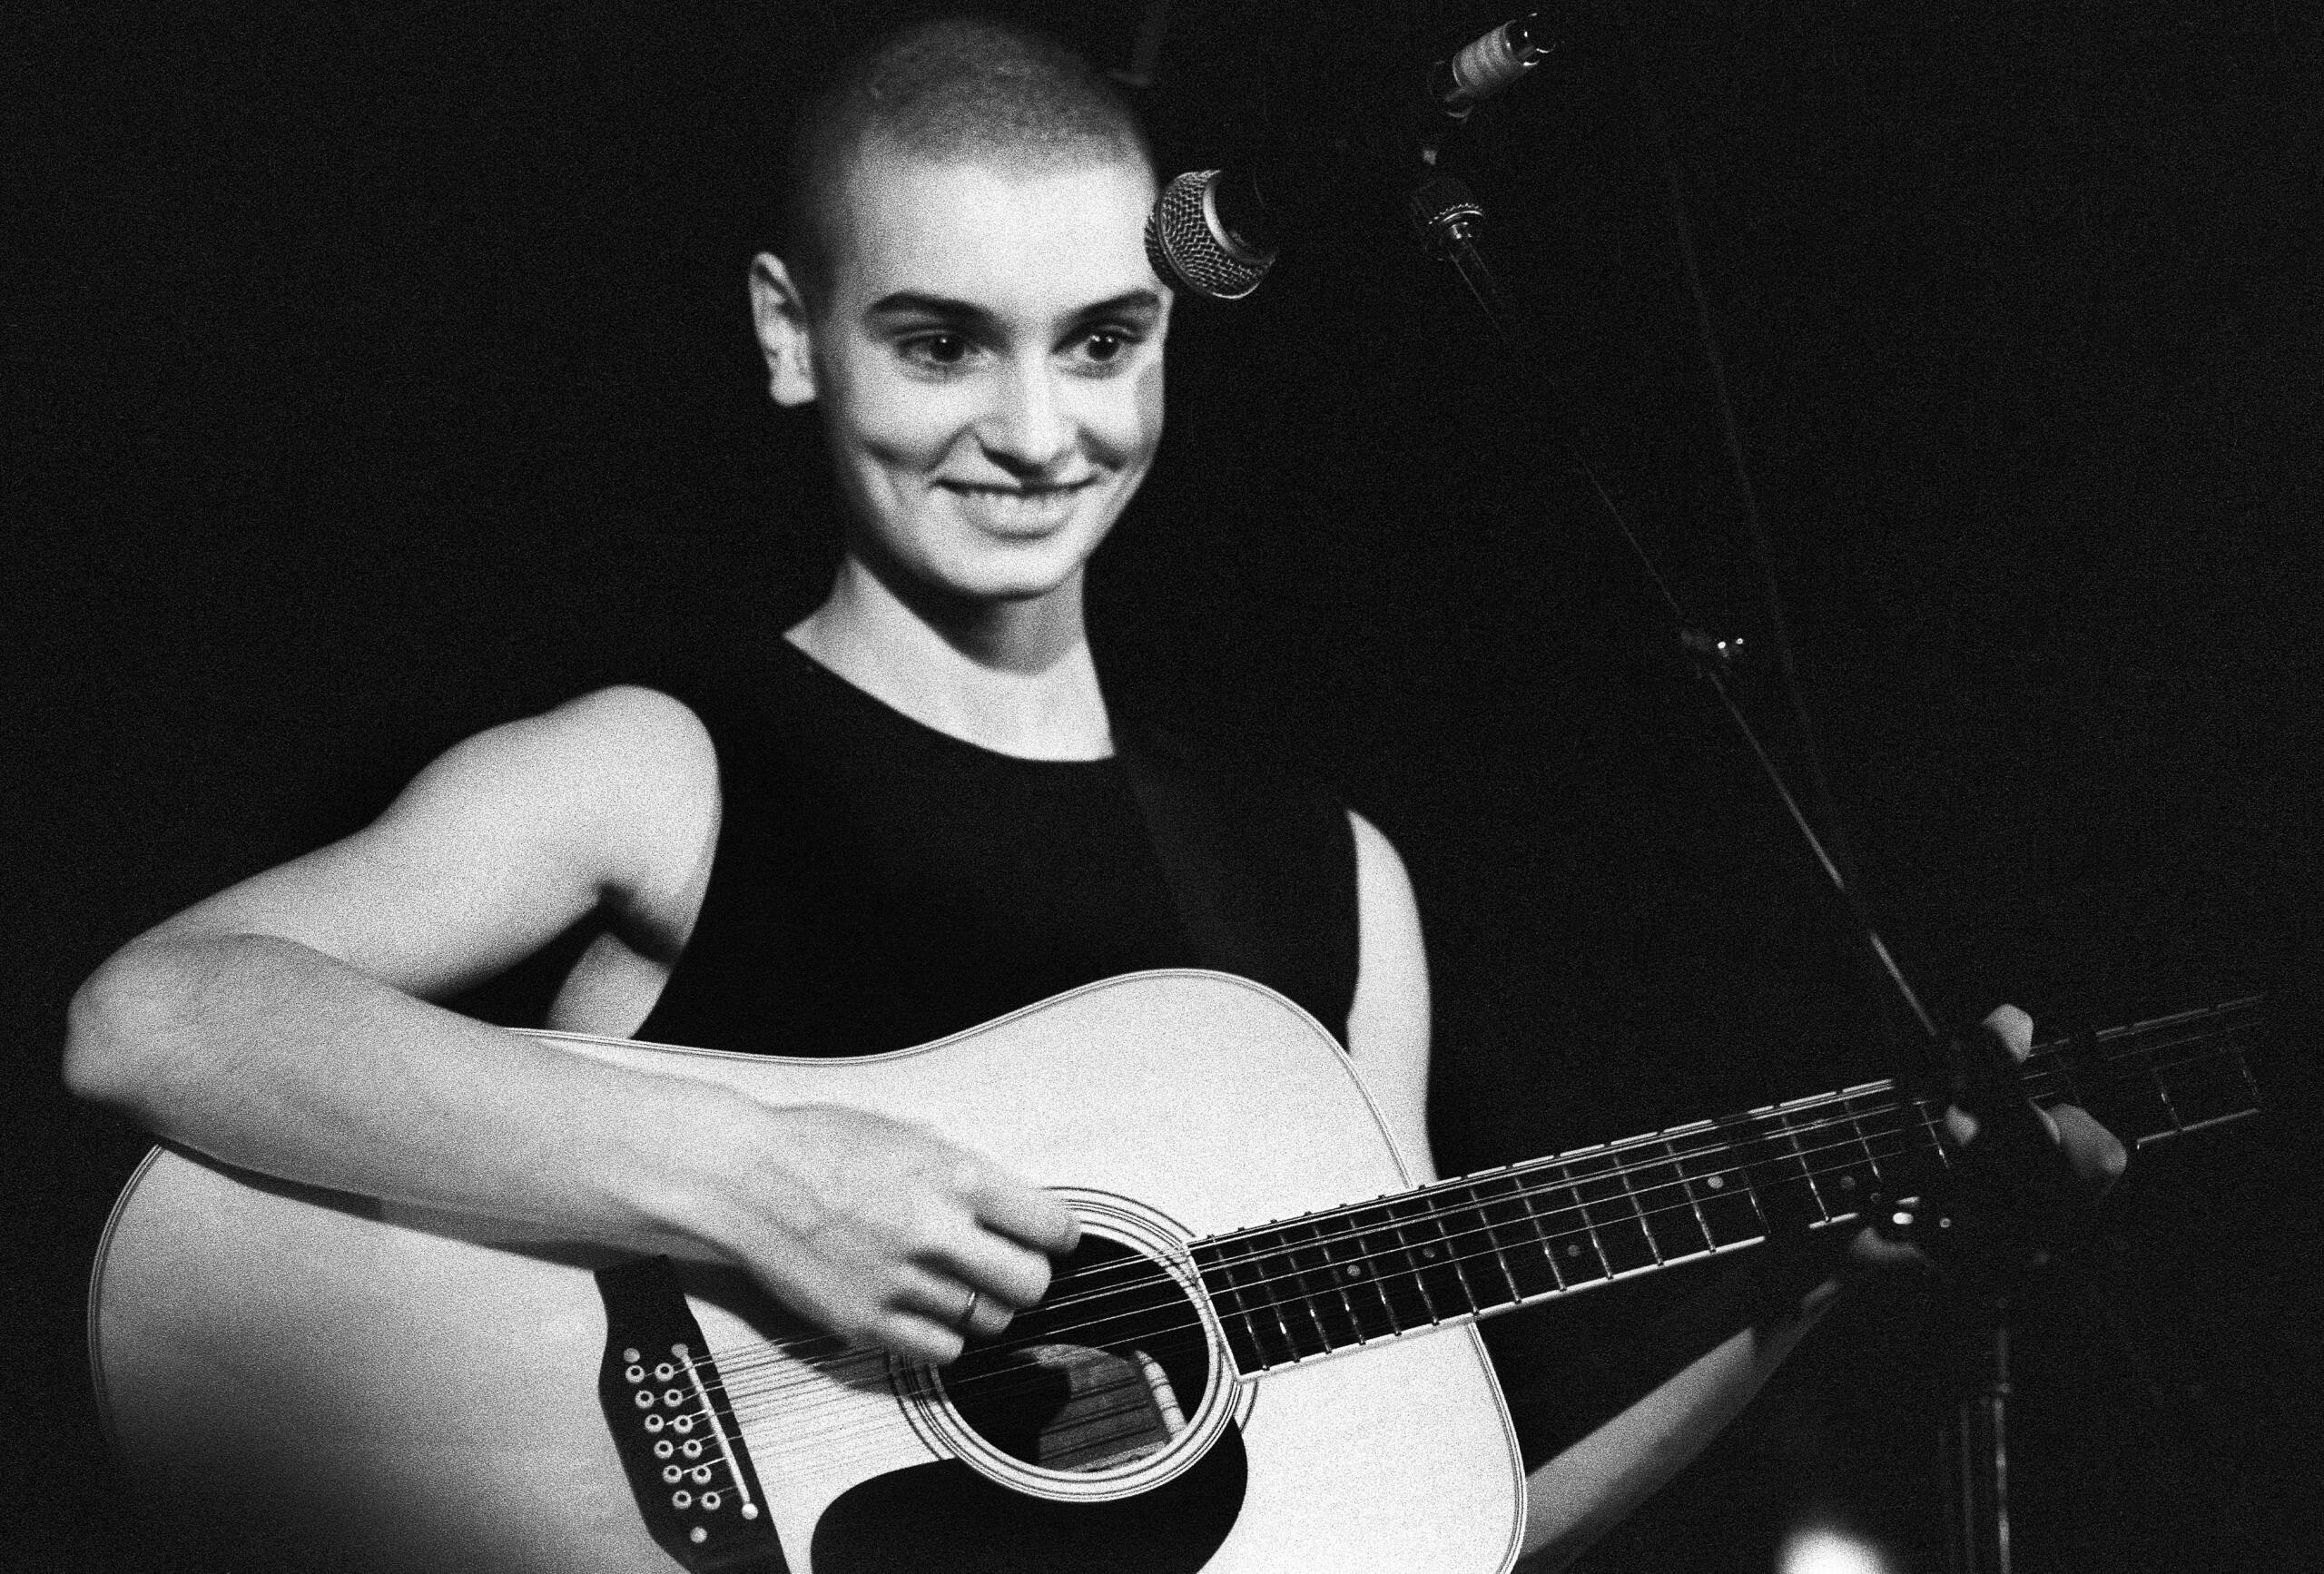 Sinéad O'Connor